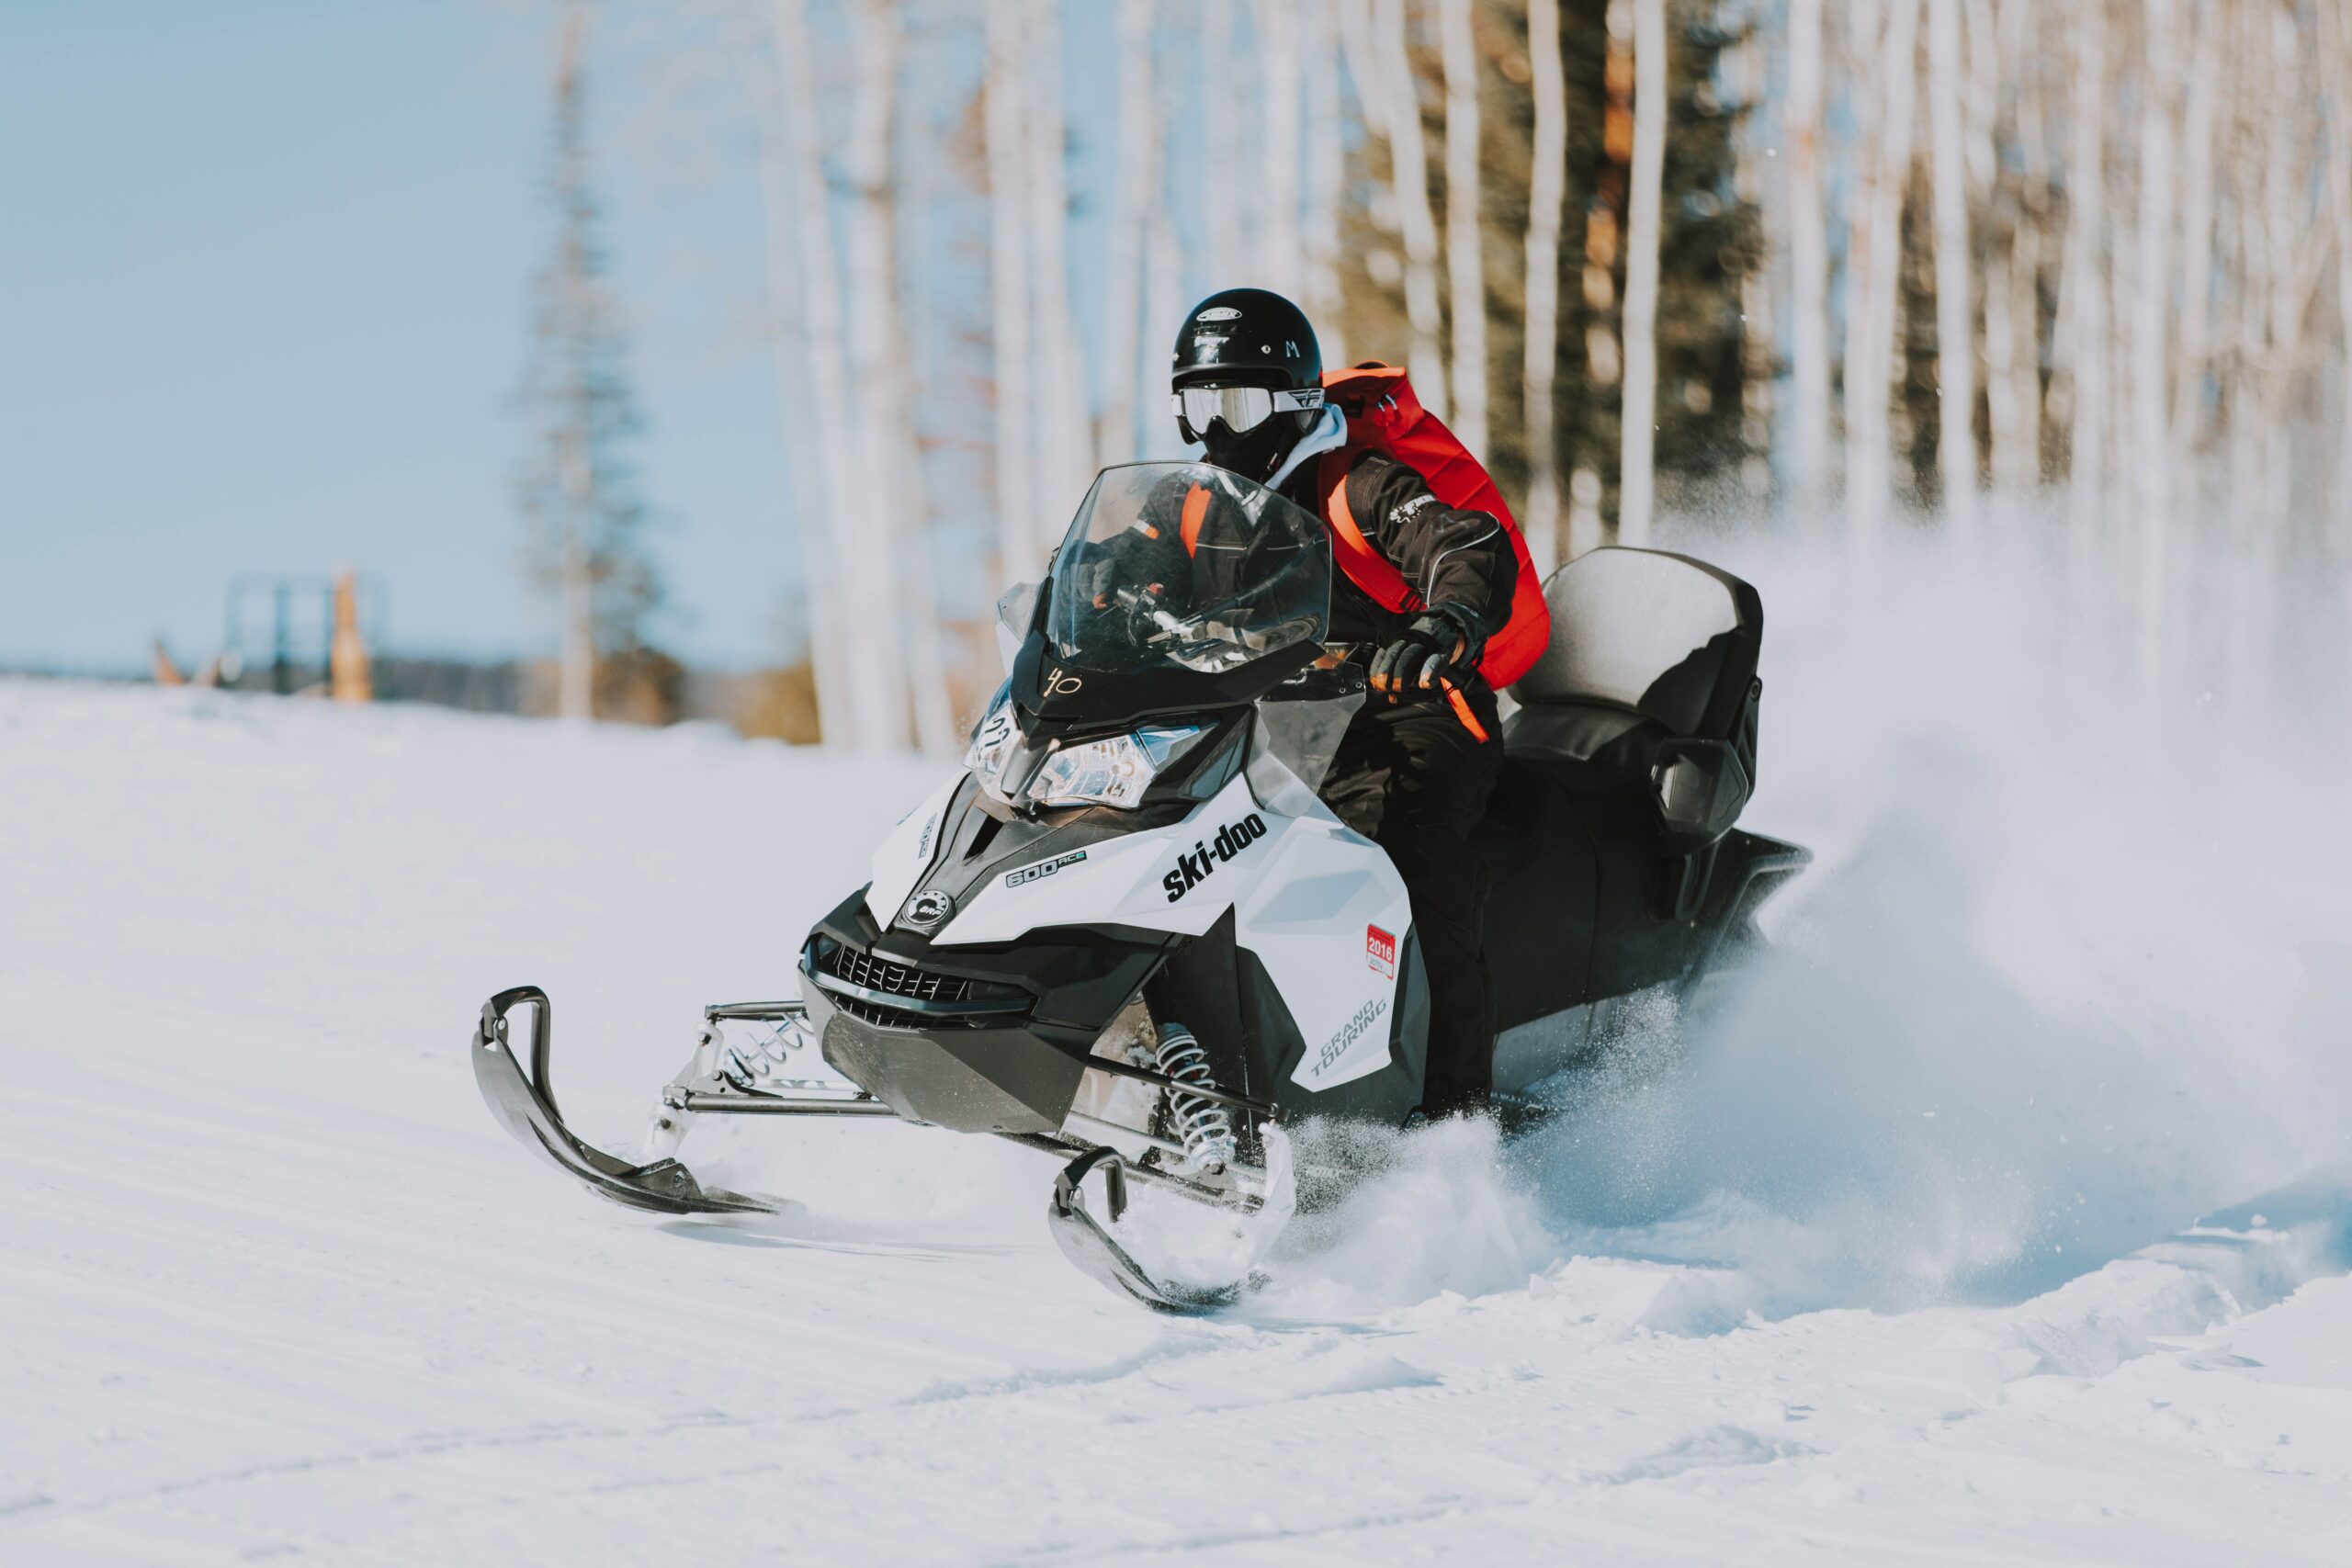 A man maneuvers a Ski-Doo snow bike through dense trees on a snowy mountain.